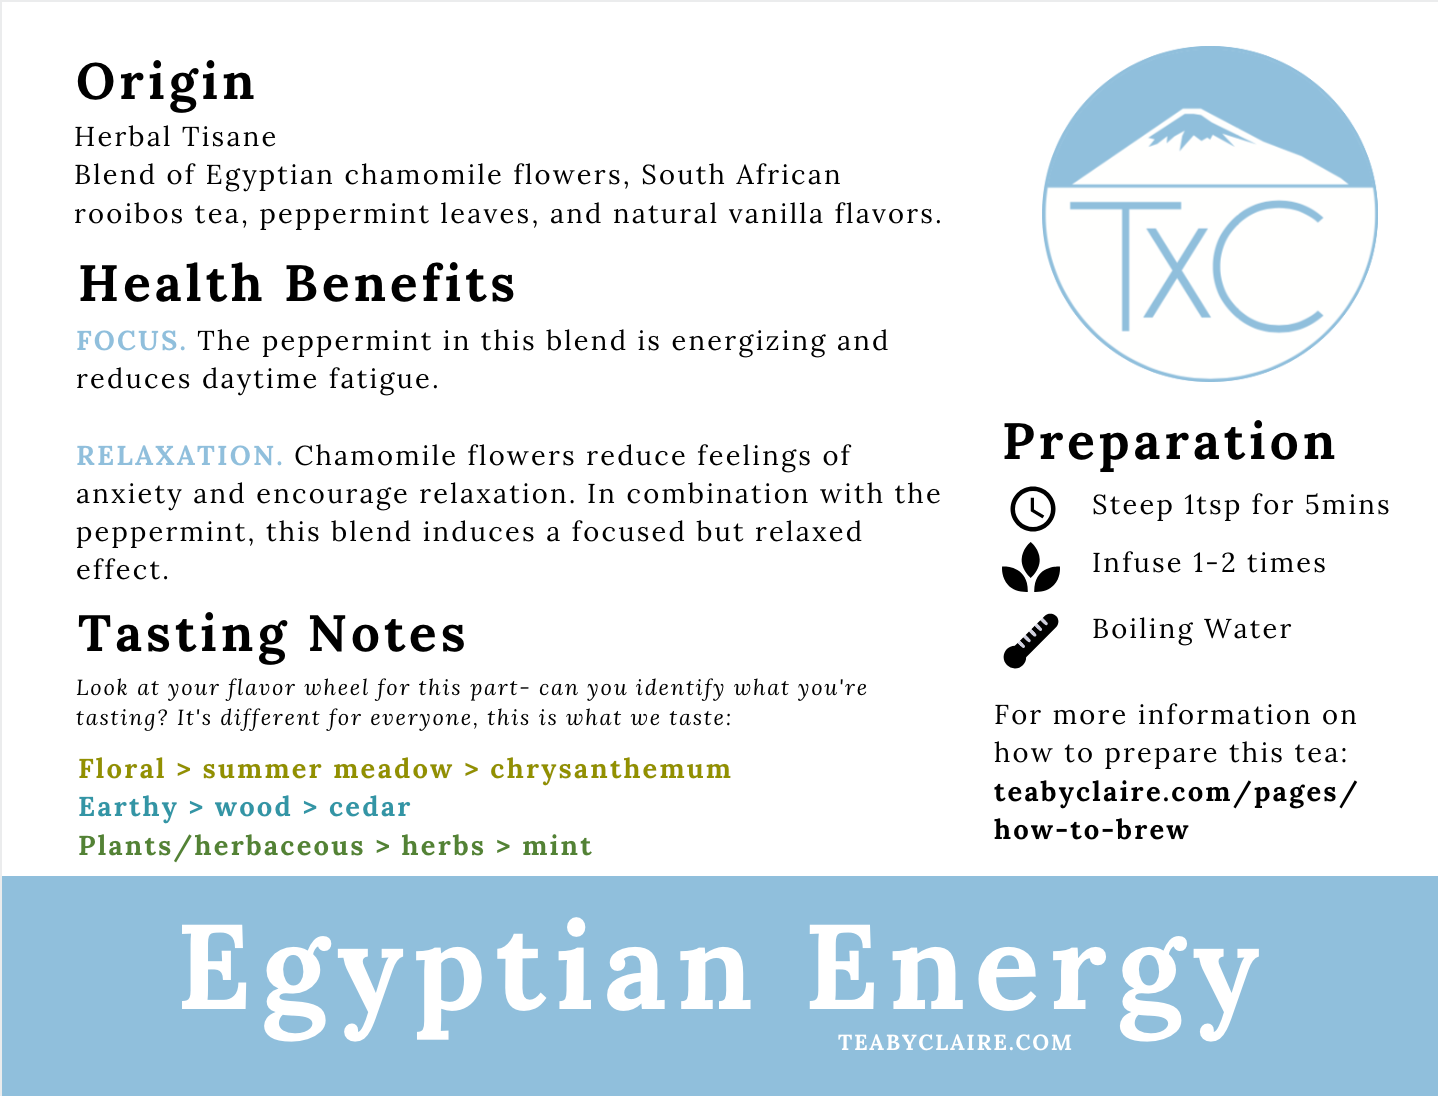 Egyptian Energy